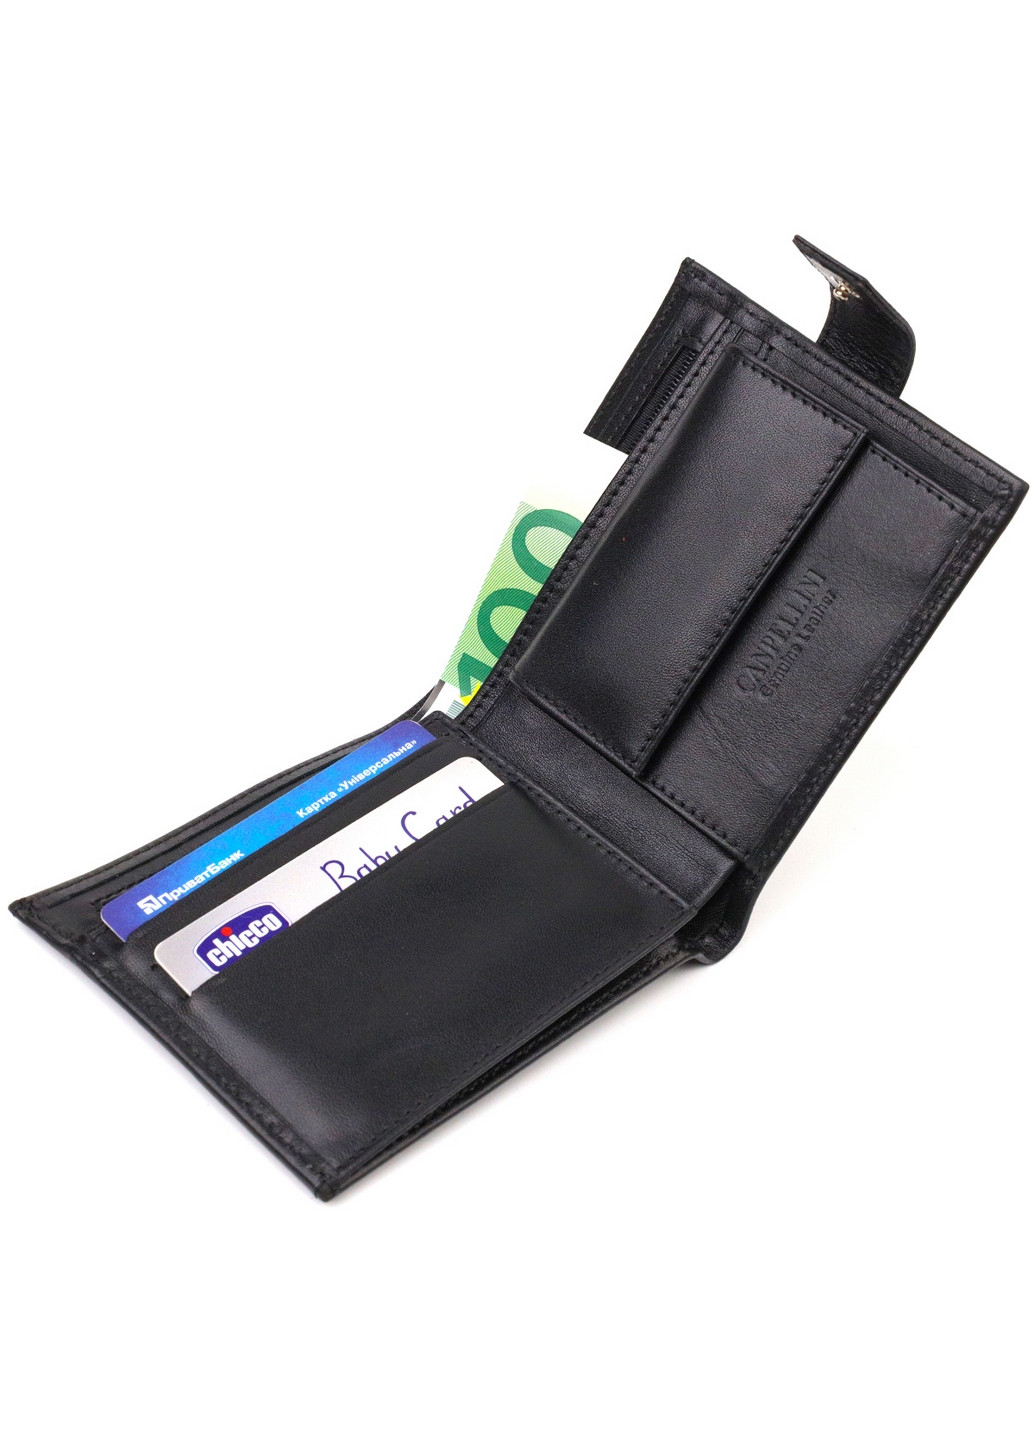 Шкіряний гаманець чоловічий 11,5х9,7х2 см Canpellini (259961680)